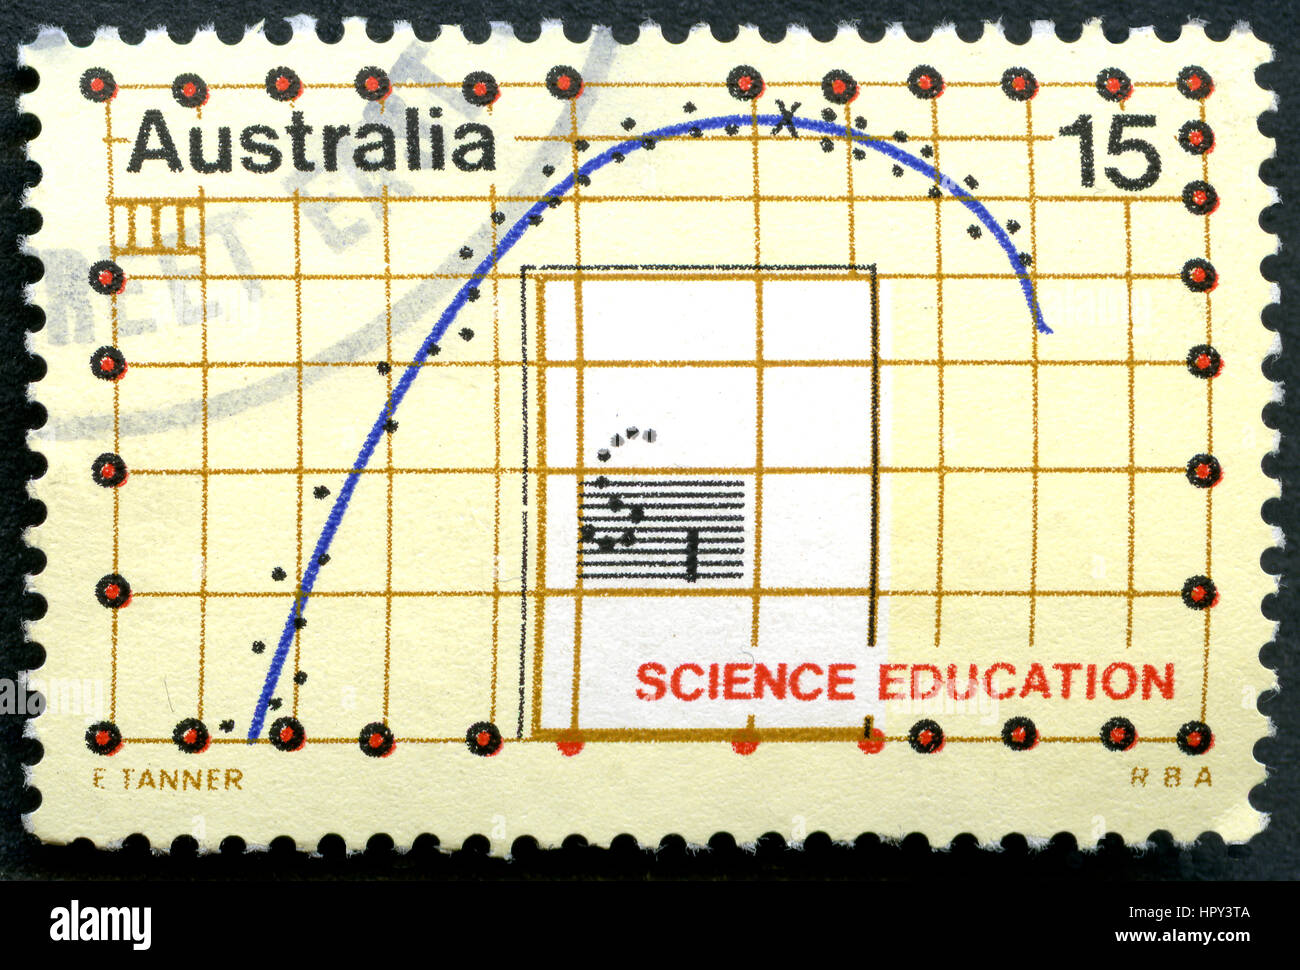 Australien - CIRCA 1974: Eine gebrauchte Briefmarke aus Australien, eine Illustration eines Graphen darstellen und feiern Science Education, ca. 1974. Stockfoto